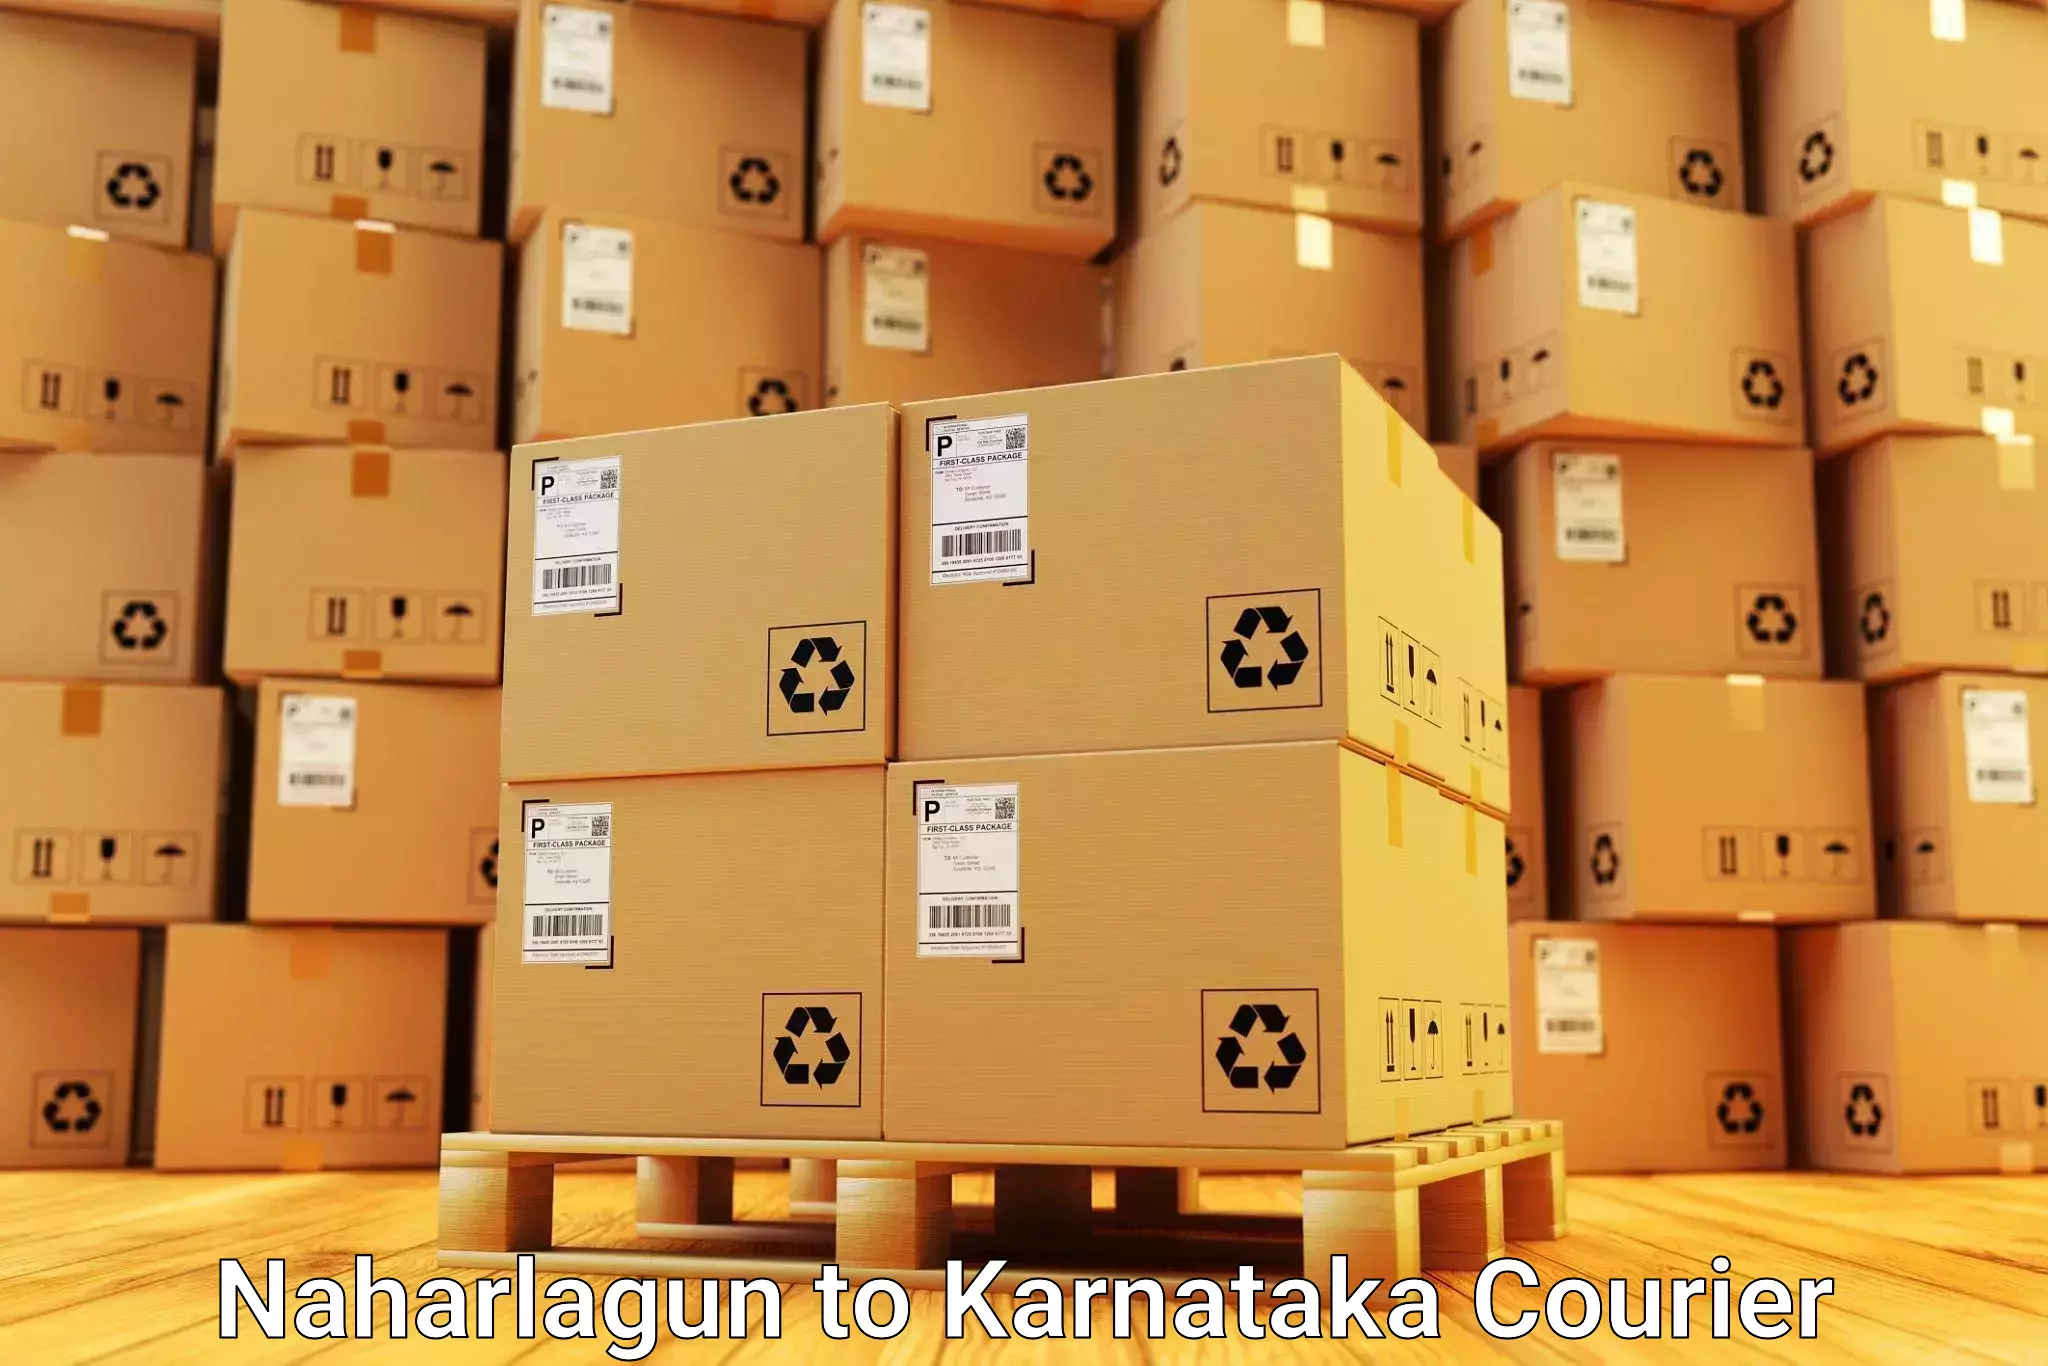 Furniture delivery service Naharlagun to Kulshekar